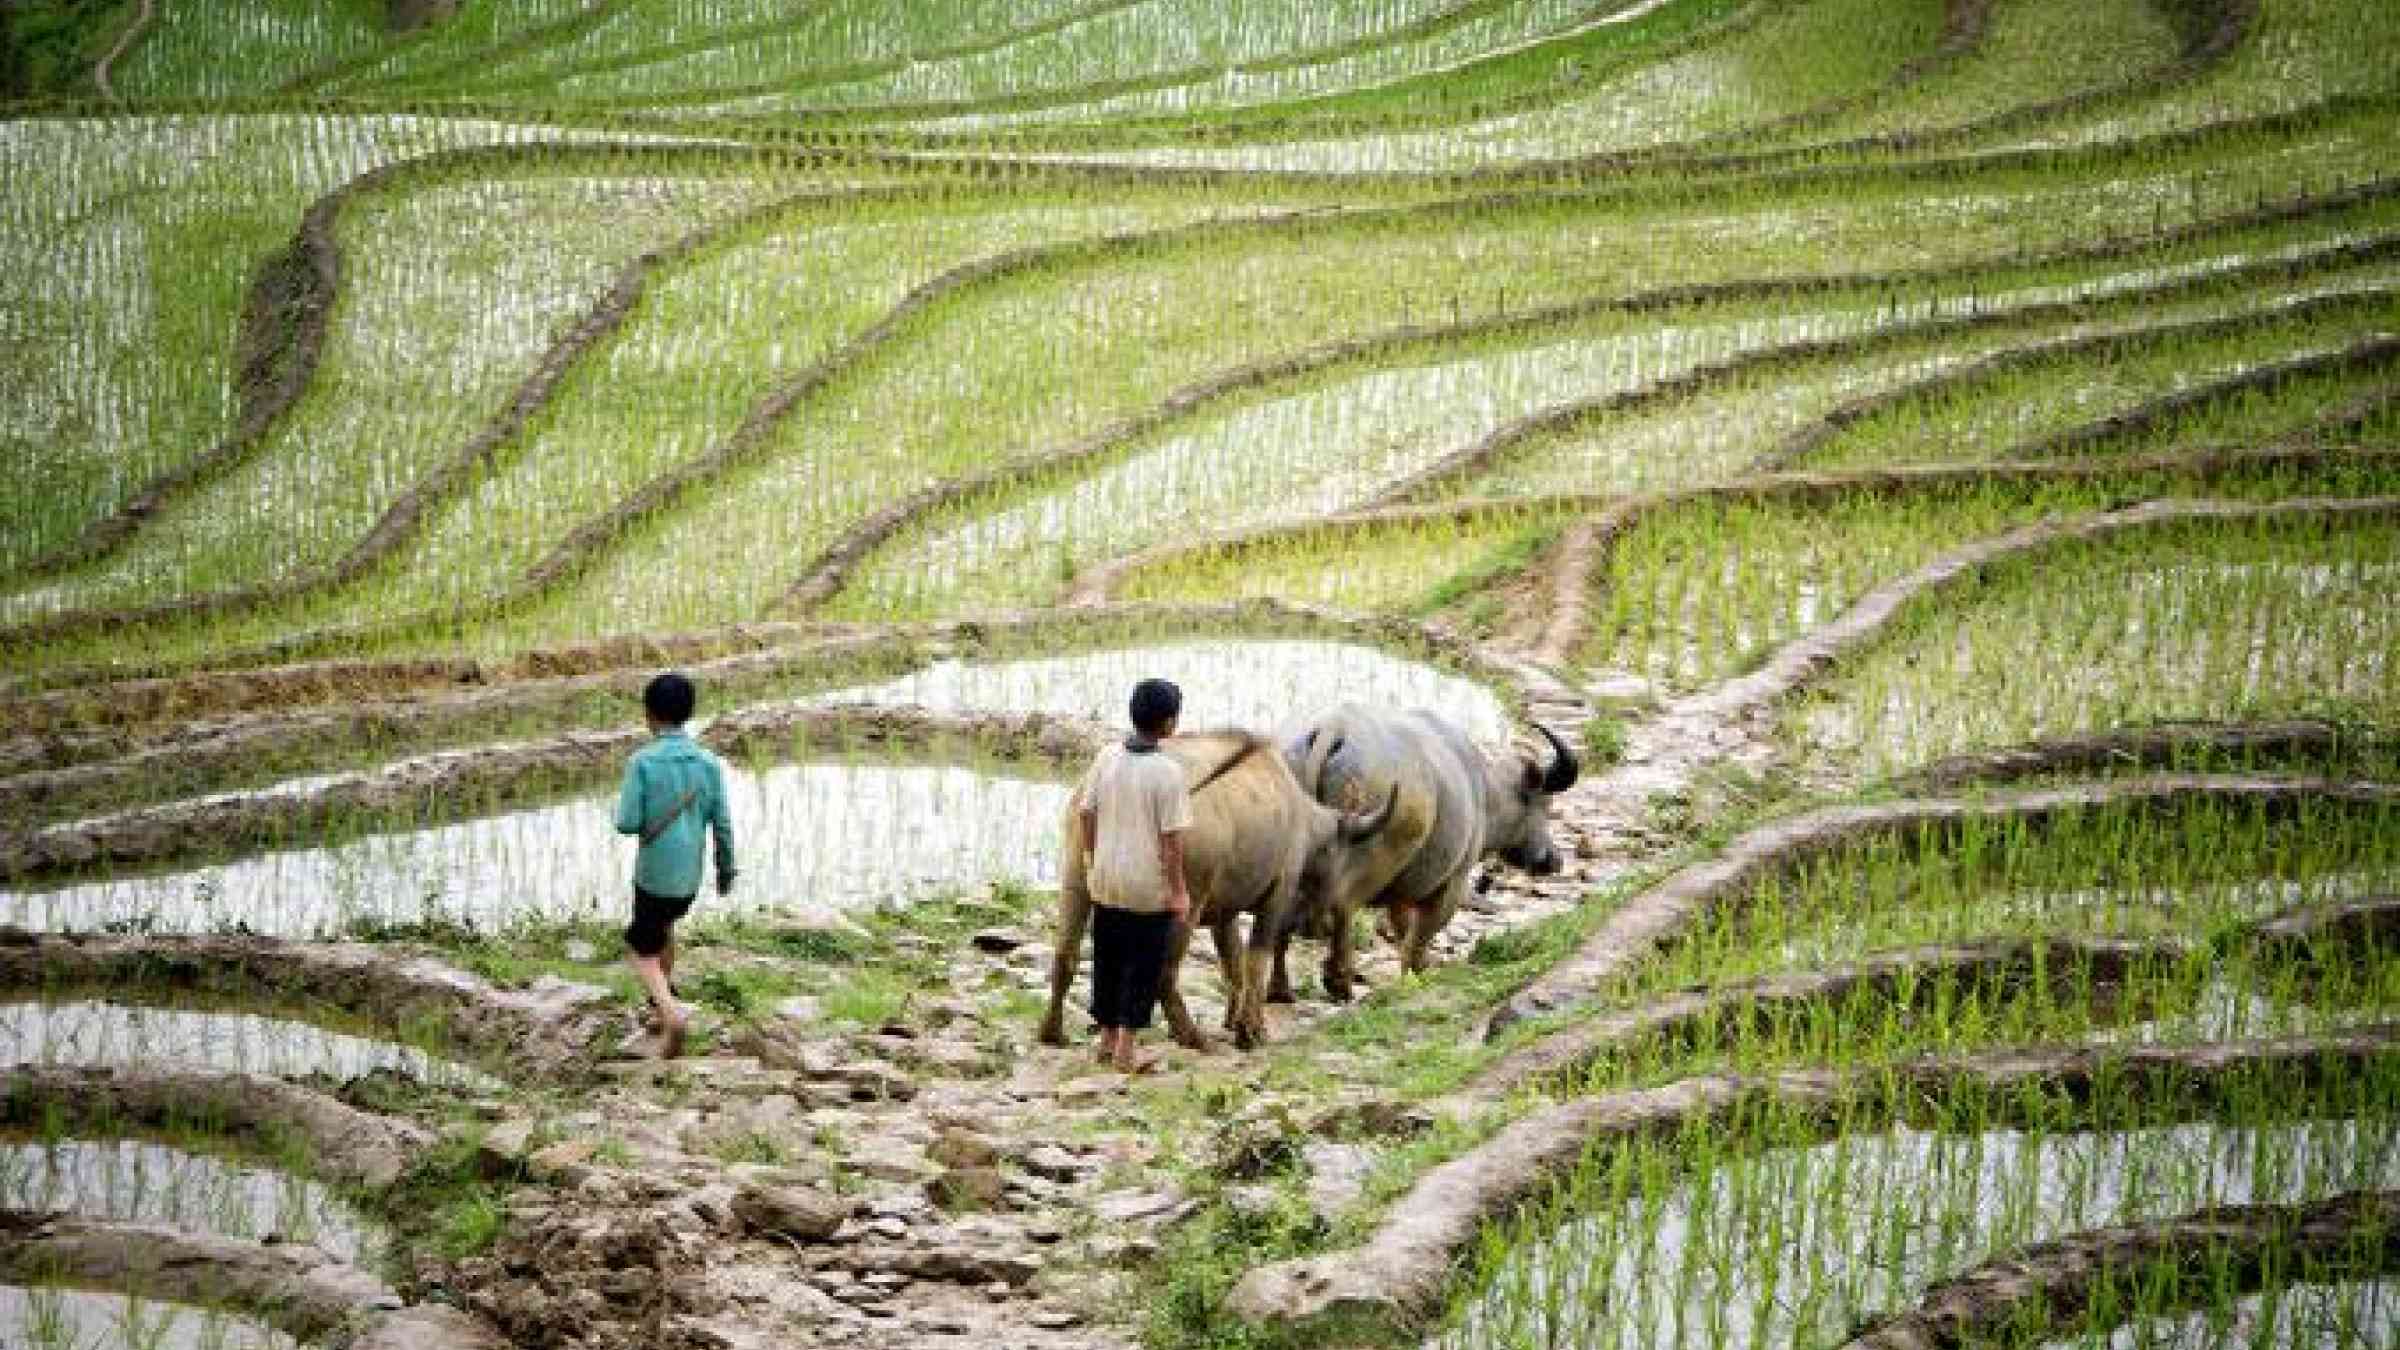 Rice fields in Viet Nam. UN Photo/Kibae Park